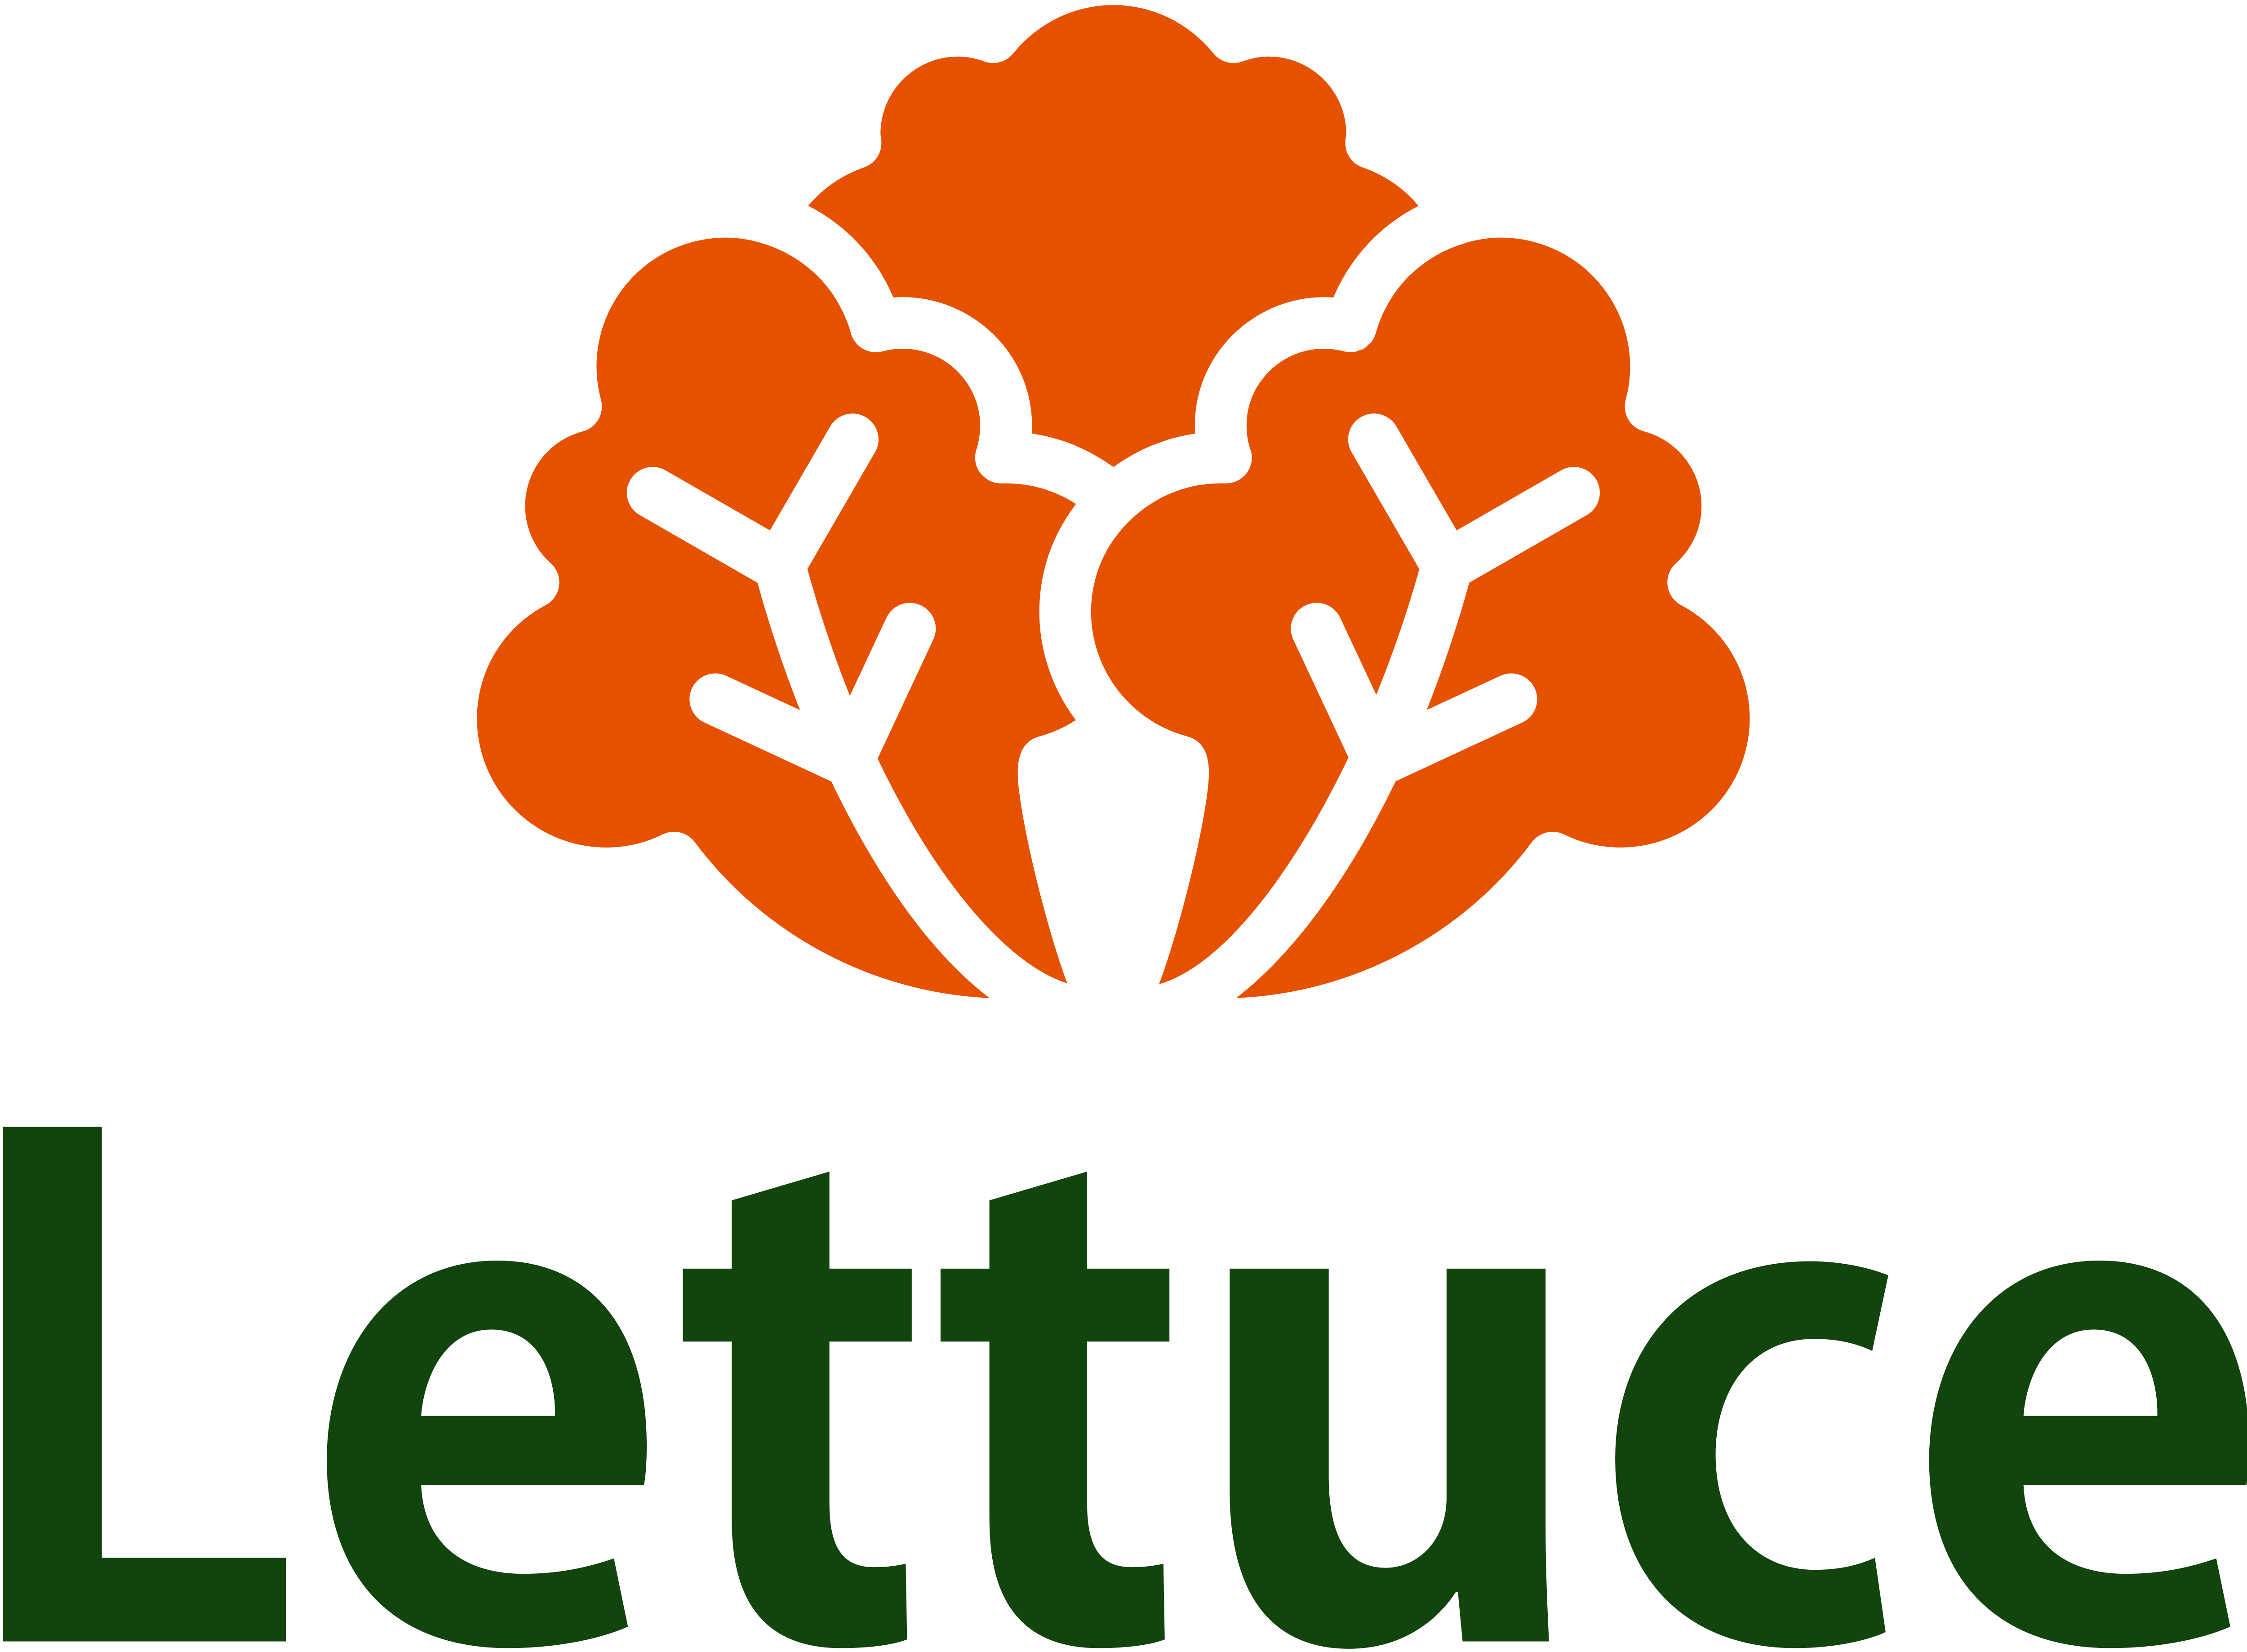 Lettuce Logo - Lettuce Logo - Austin EcoNetwork